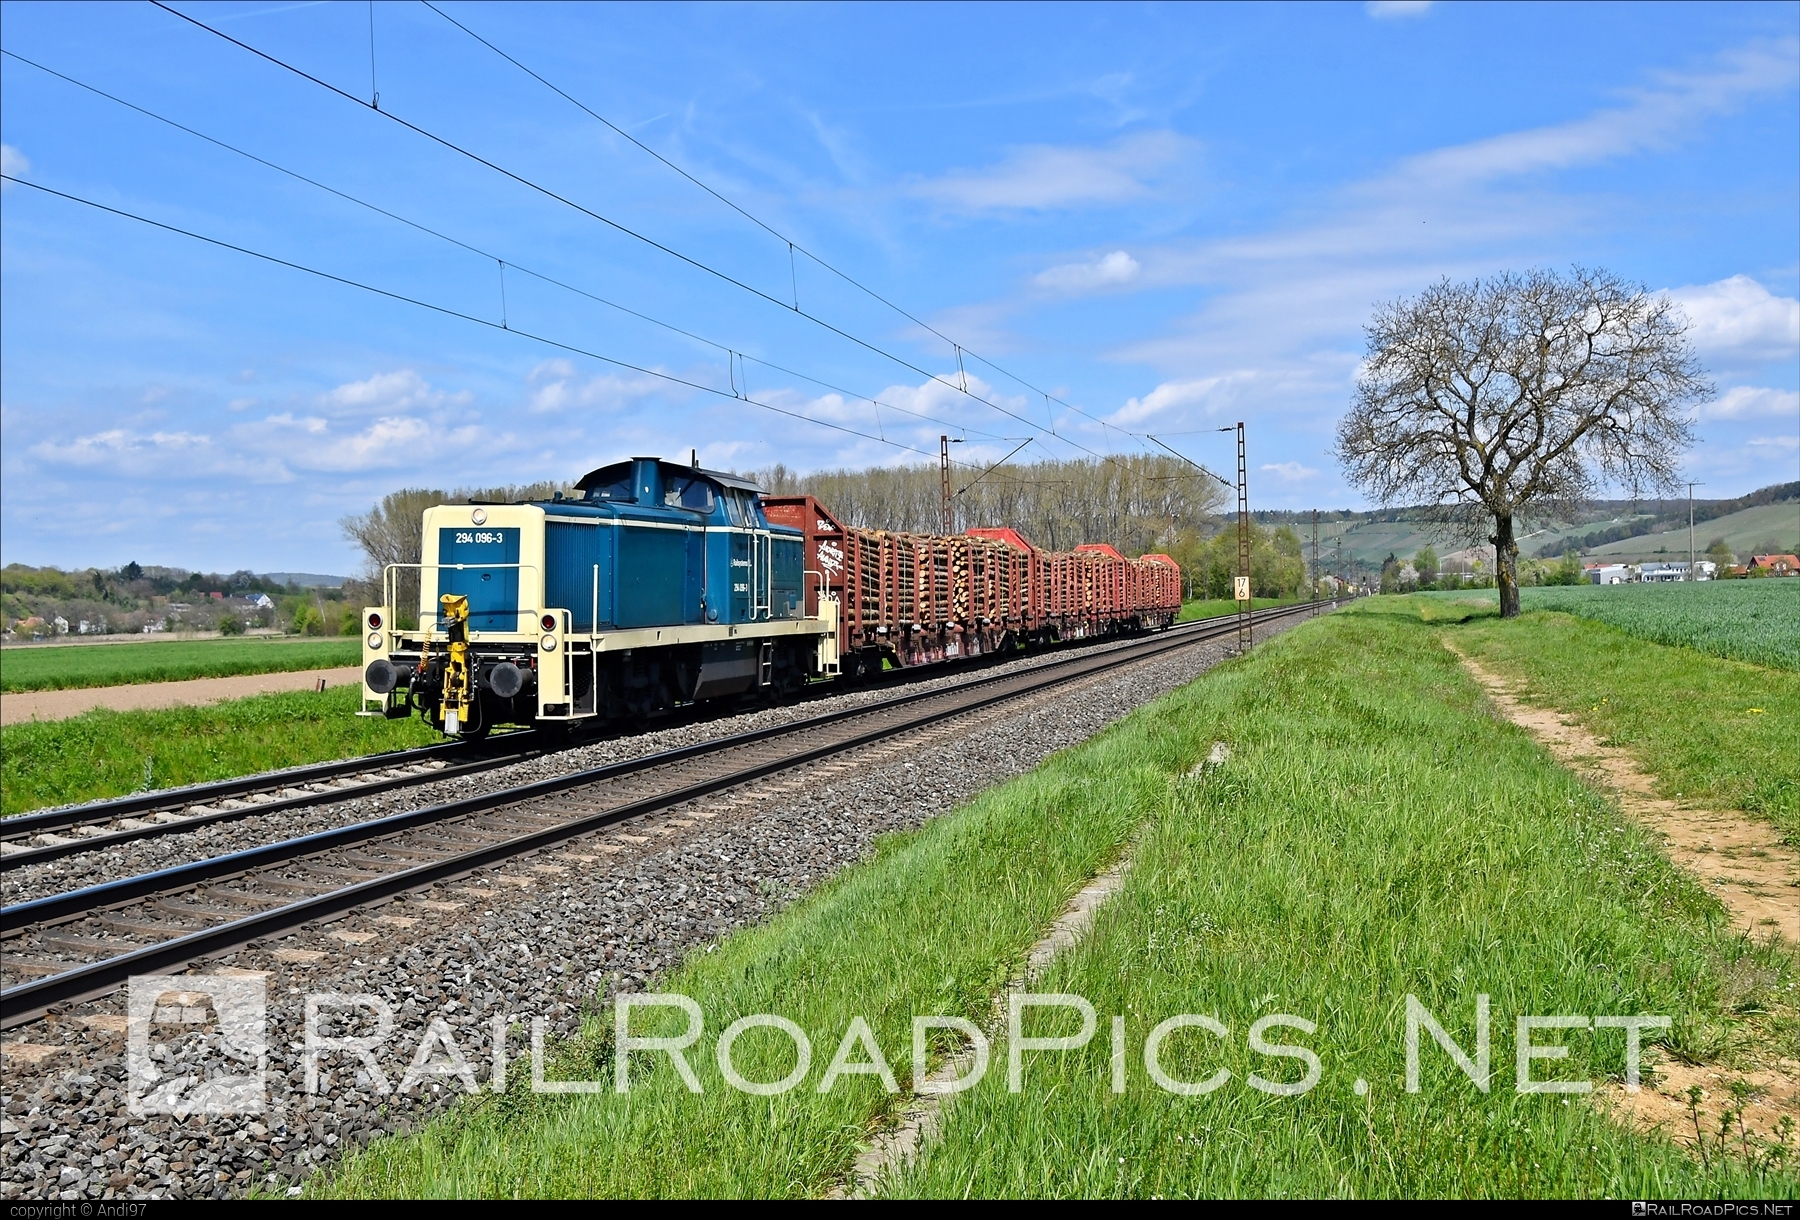 Deutz V90 - 294 096-3 operated by Railsystems RP GmbH #deutz #deutzv90 #locomotiveclassv90 #makv90 #railsystemsRP #rprs #wood